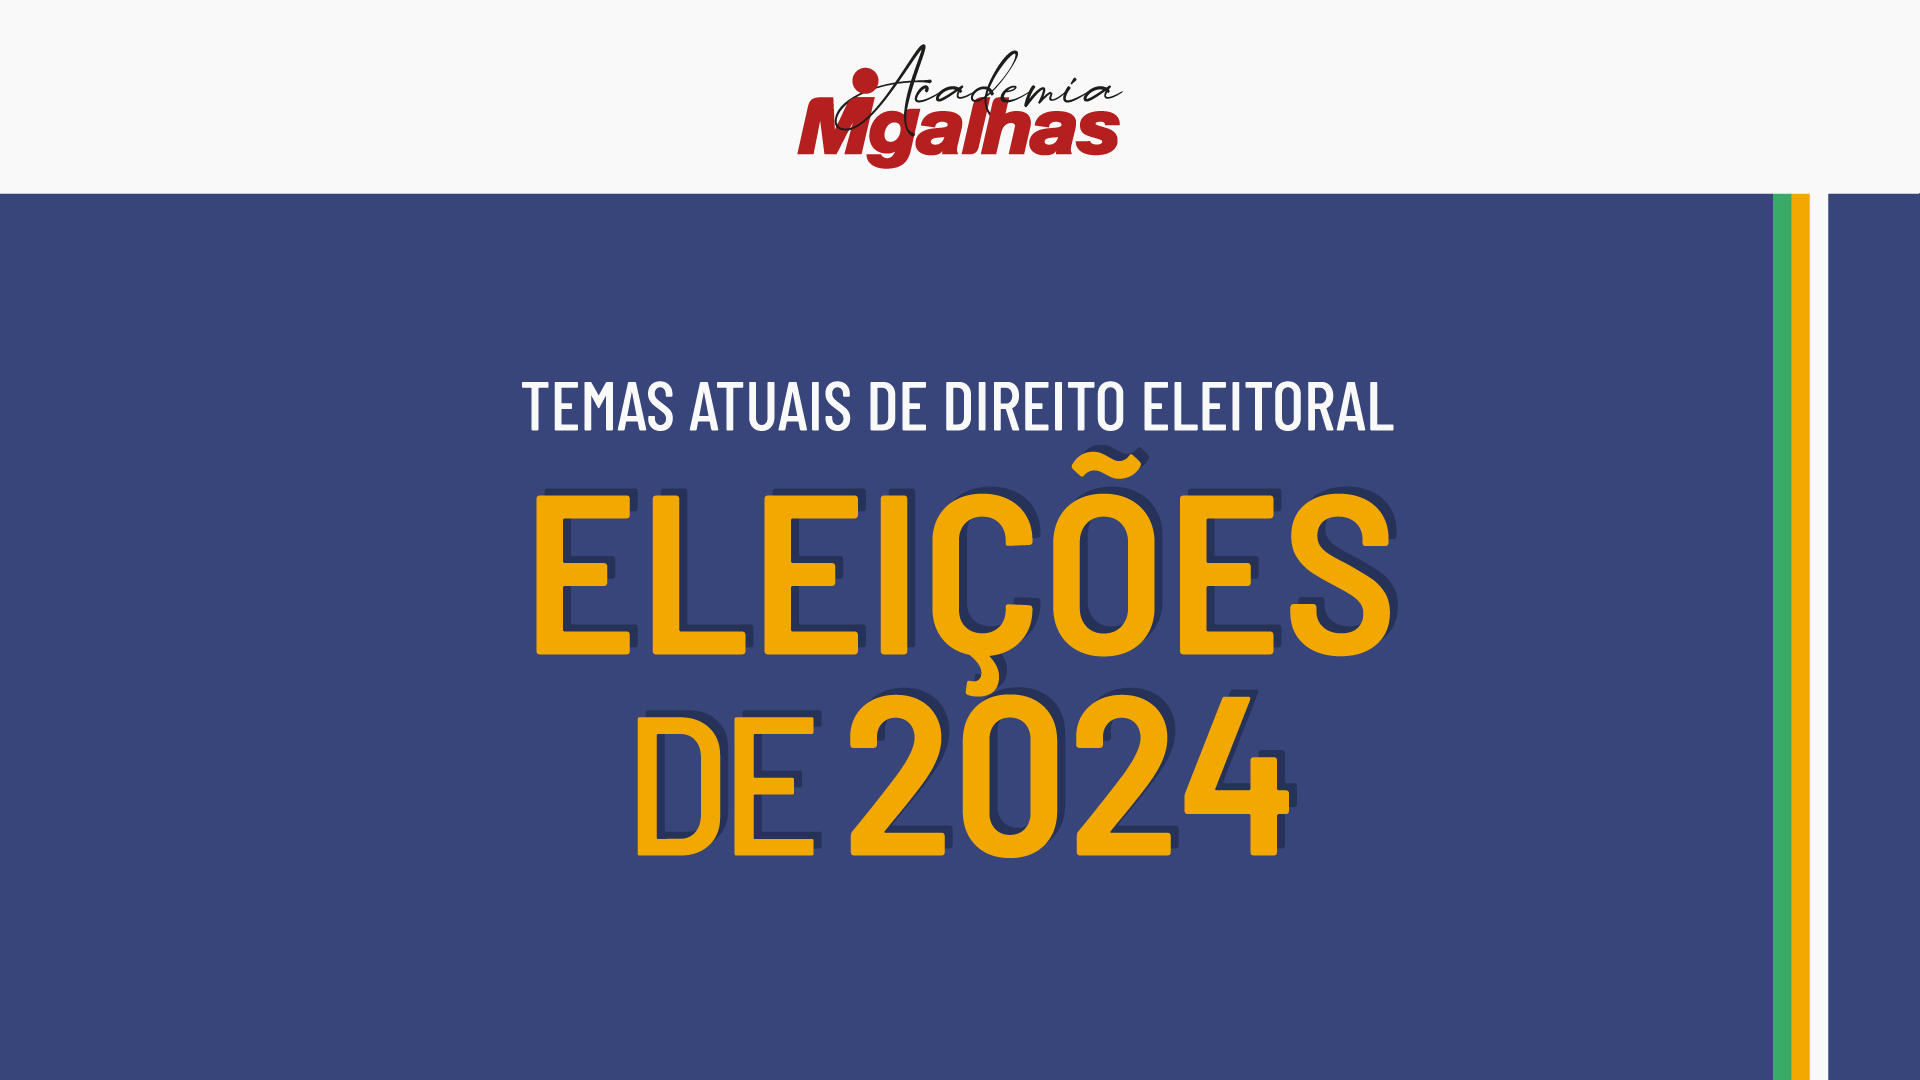 Temas atuais de Direito Eleitoral - Eleições de 2024